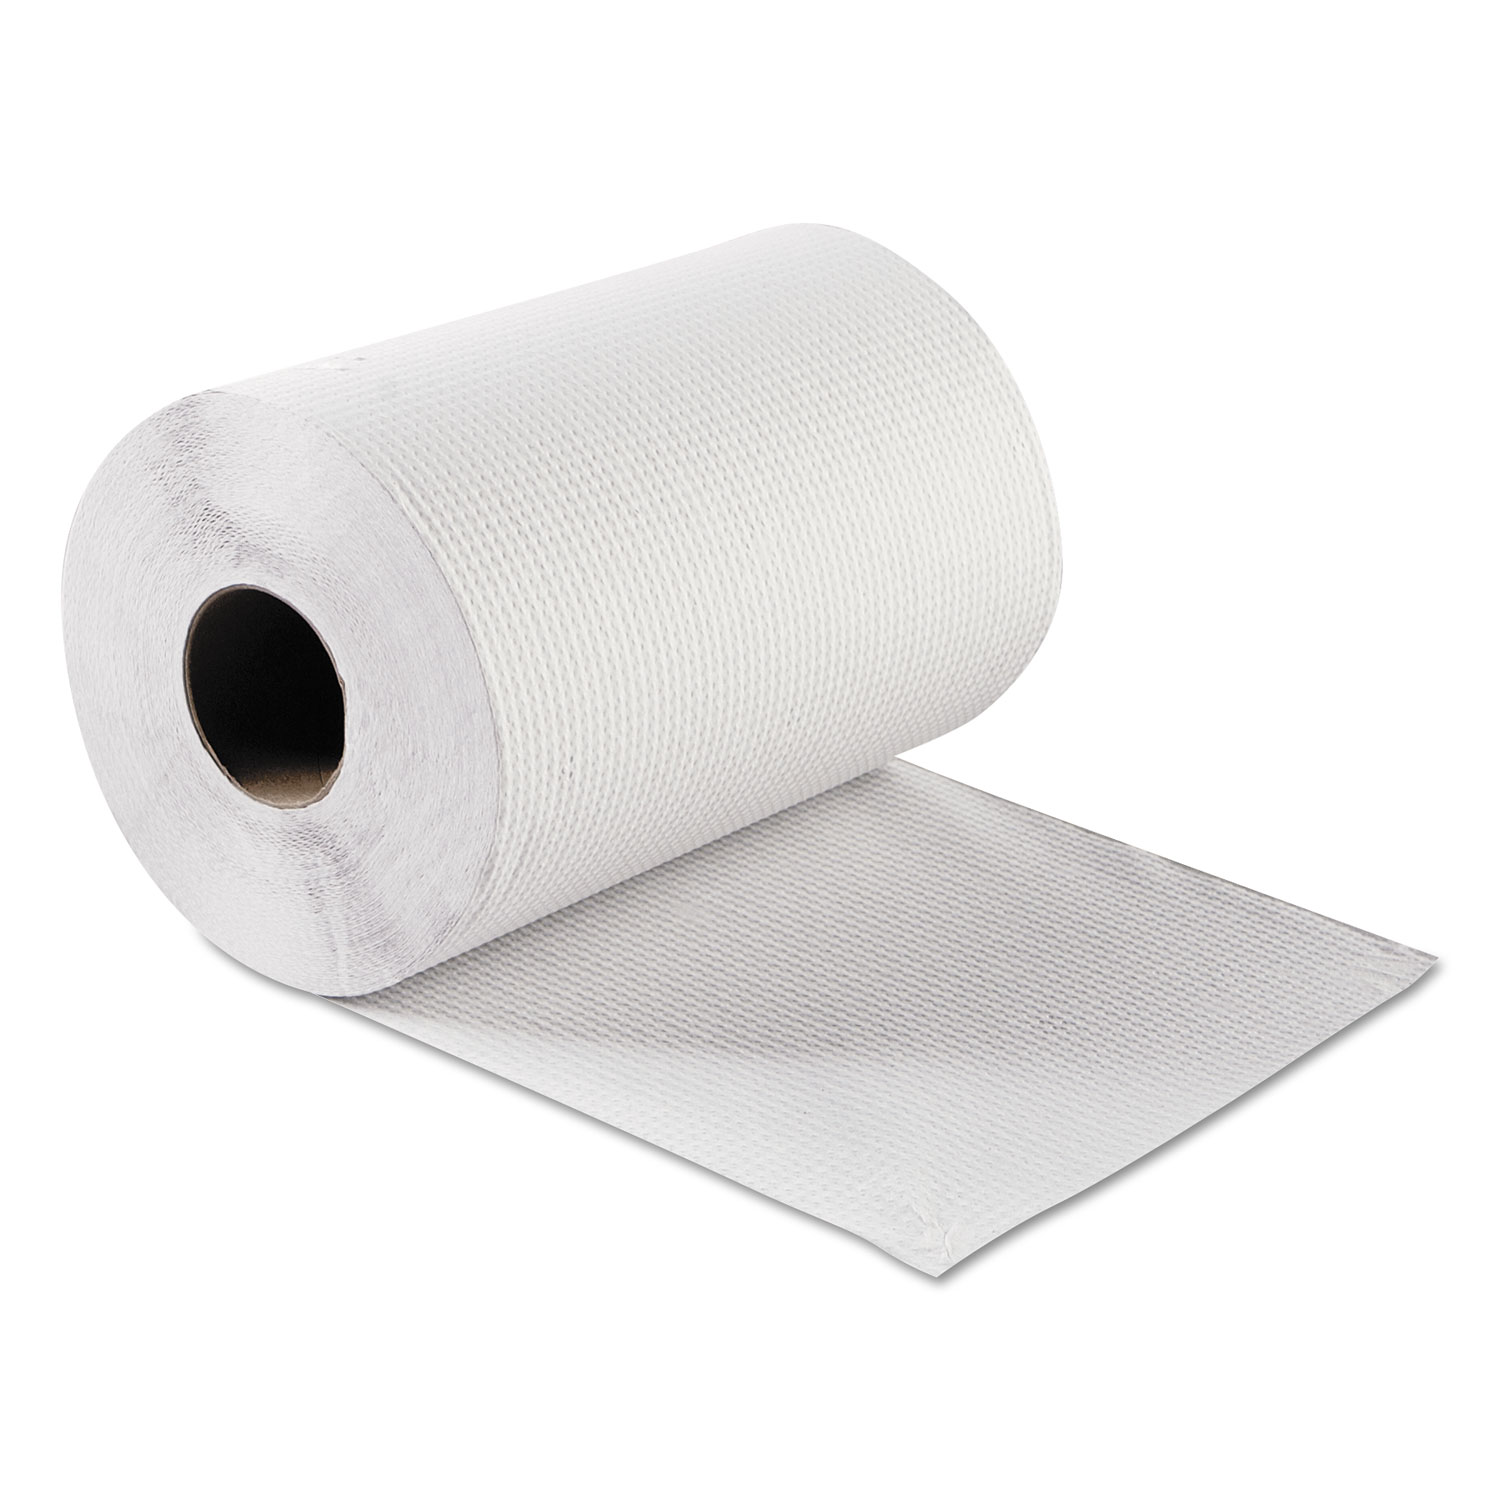  GEN GEN1803 Hardwound Roll Towels, White, 8 x 300 ft, 12 Rolls/Carton (GEN1803) 